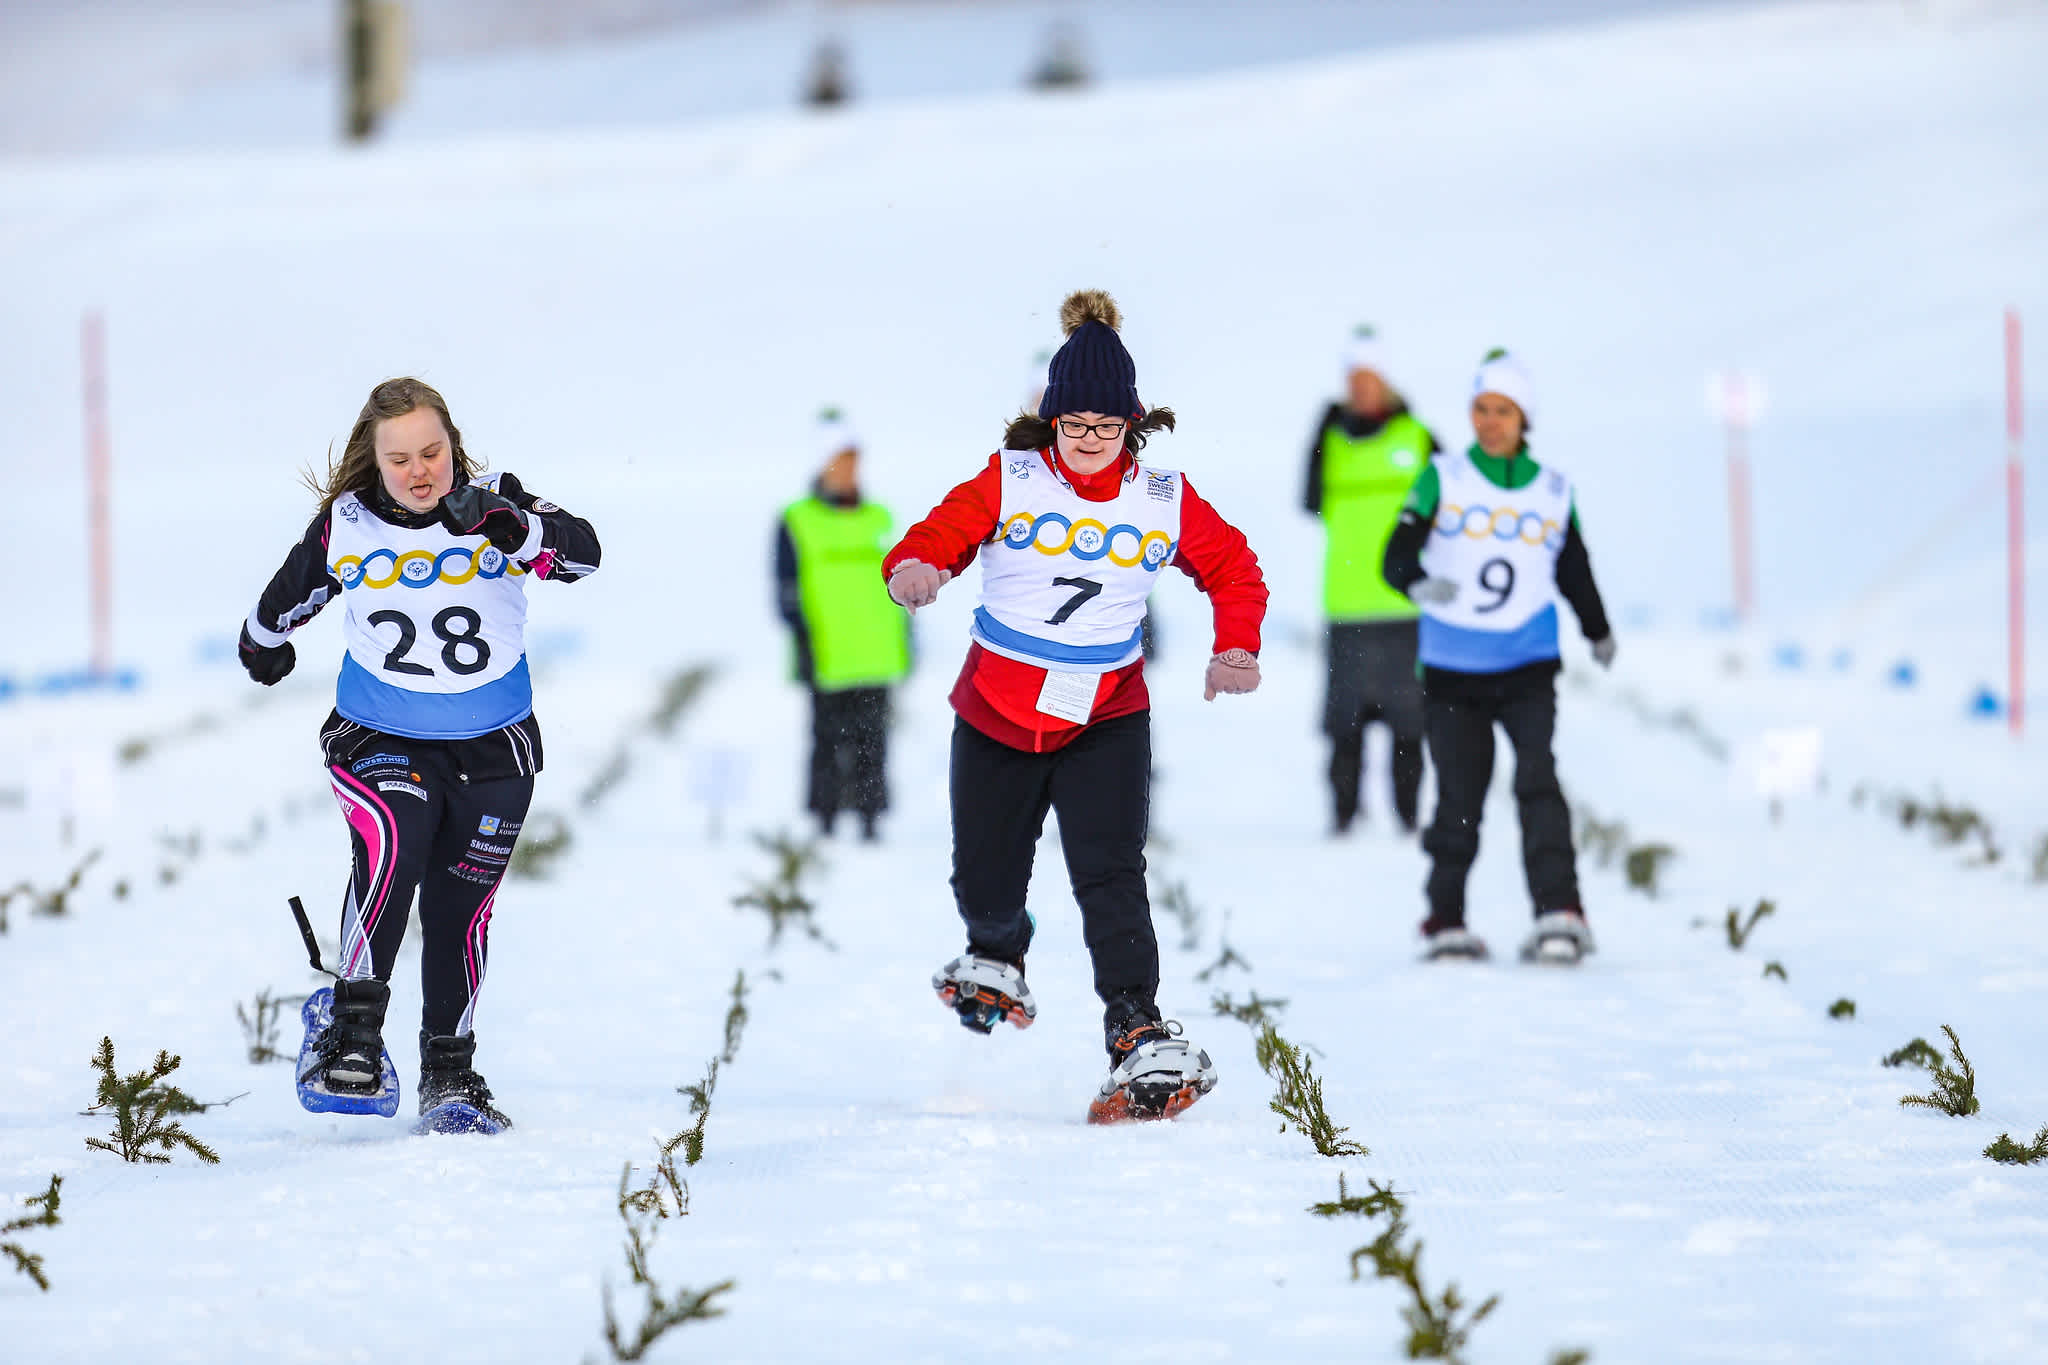 Deltagare i snöskolöpning springer mot varandra i ett 25-meterslopp.